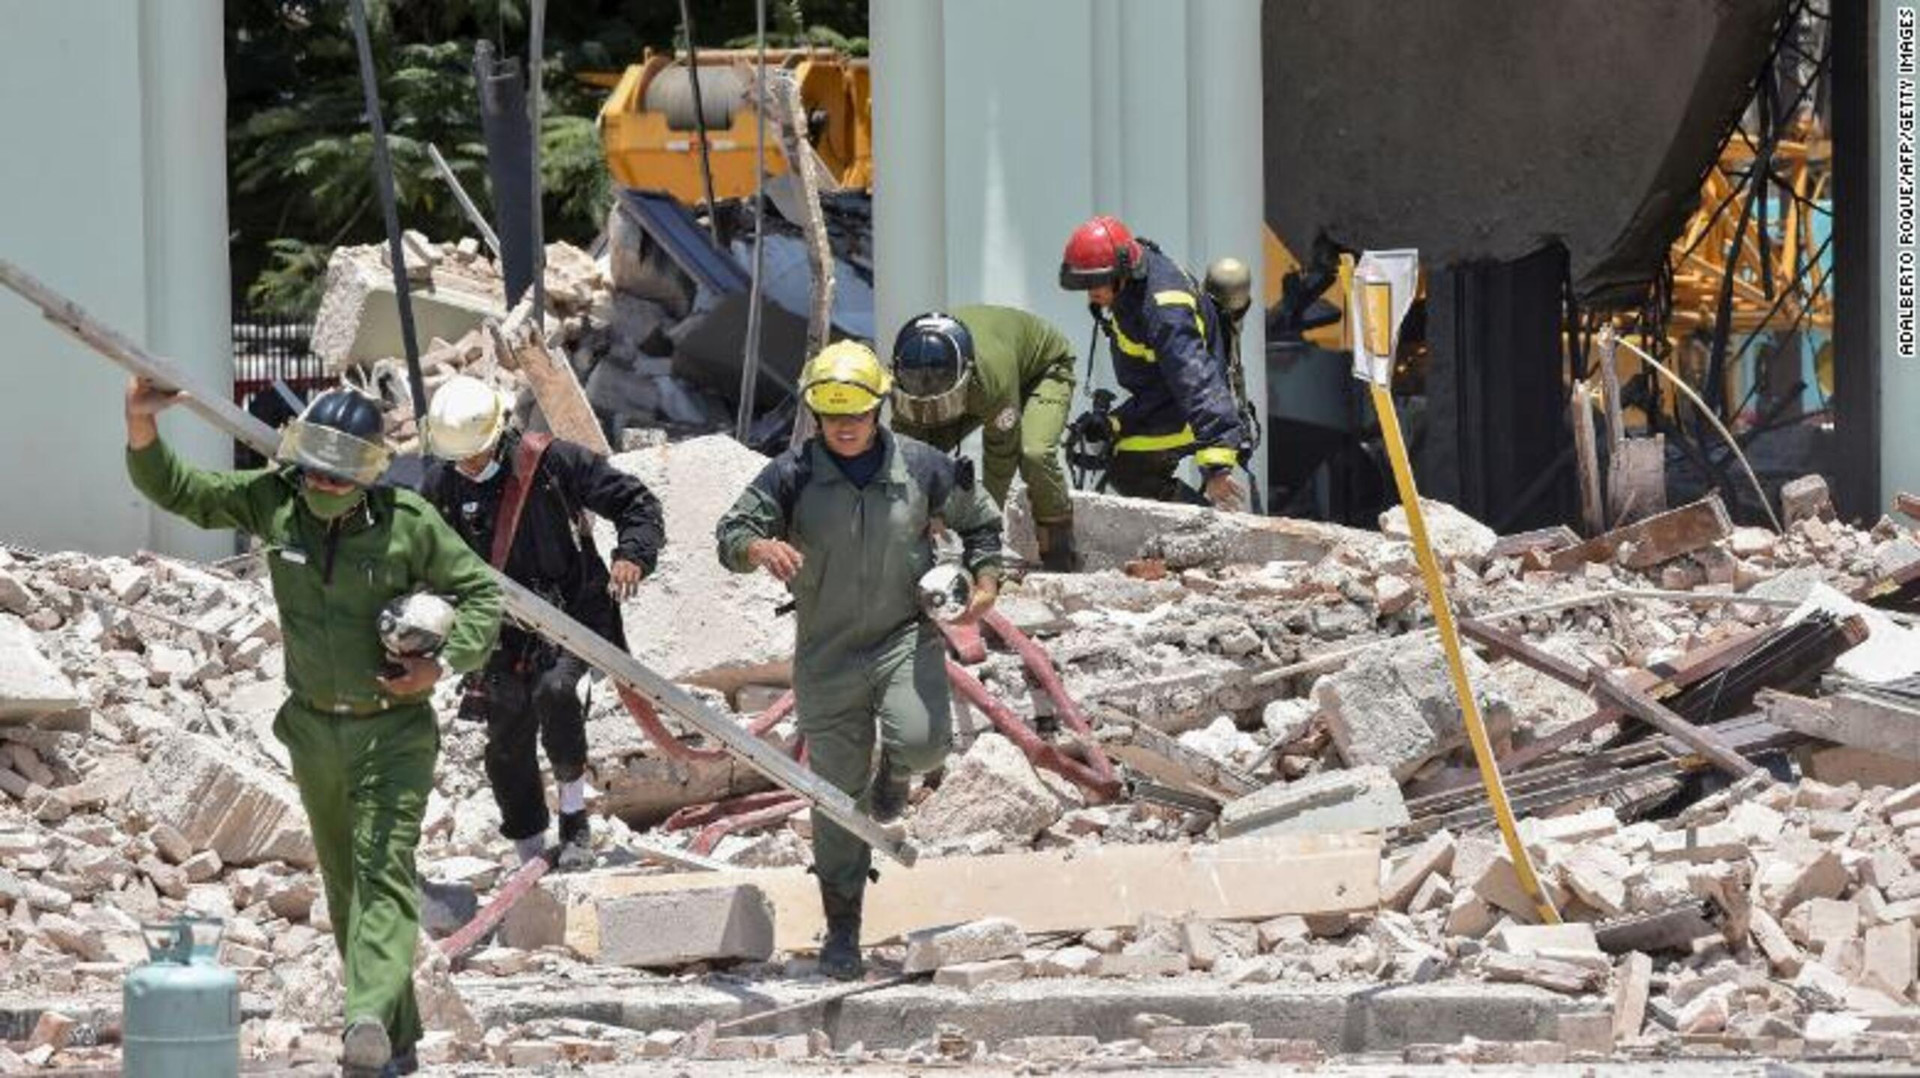 Ảnh: Hiện trường vụ nổ khiến 22 người chết tại khách sạn nổi tiếng ở Cuba - 5